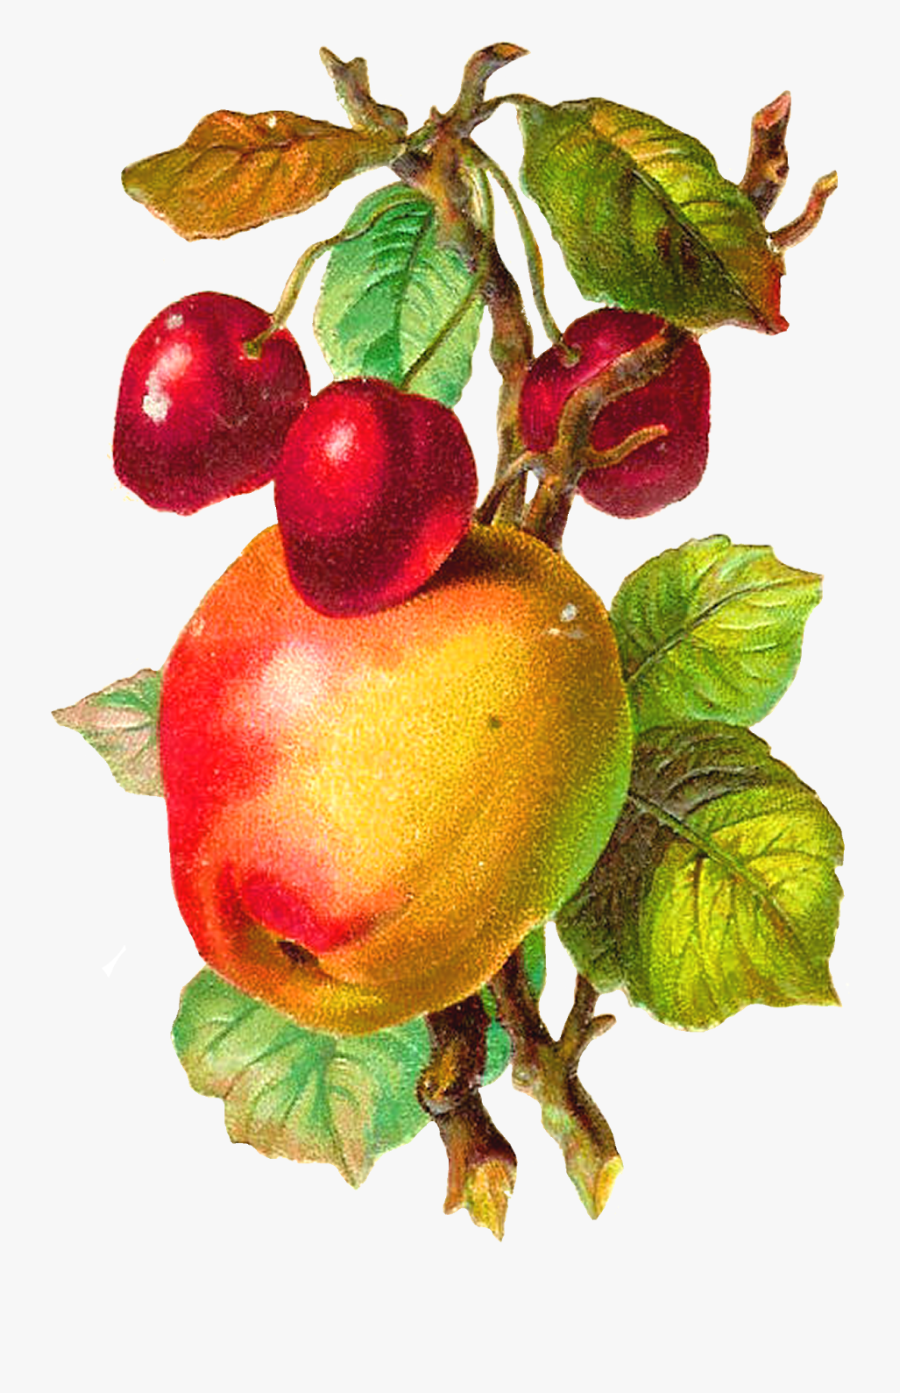 Antique Apple Clipart - Apple Fruit Vintage Png, Transparent Clipart